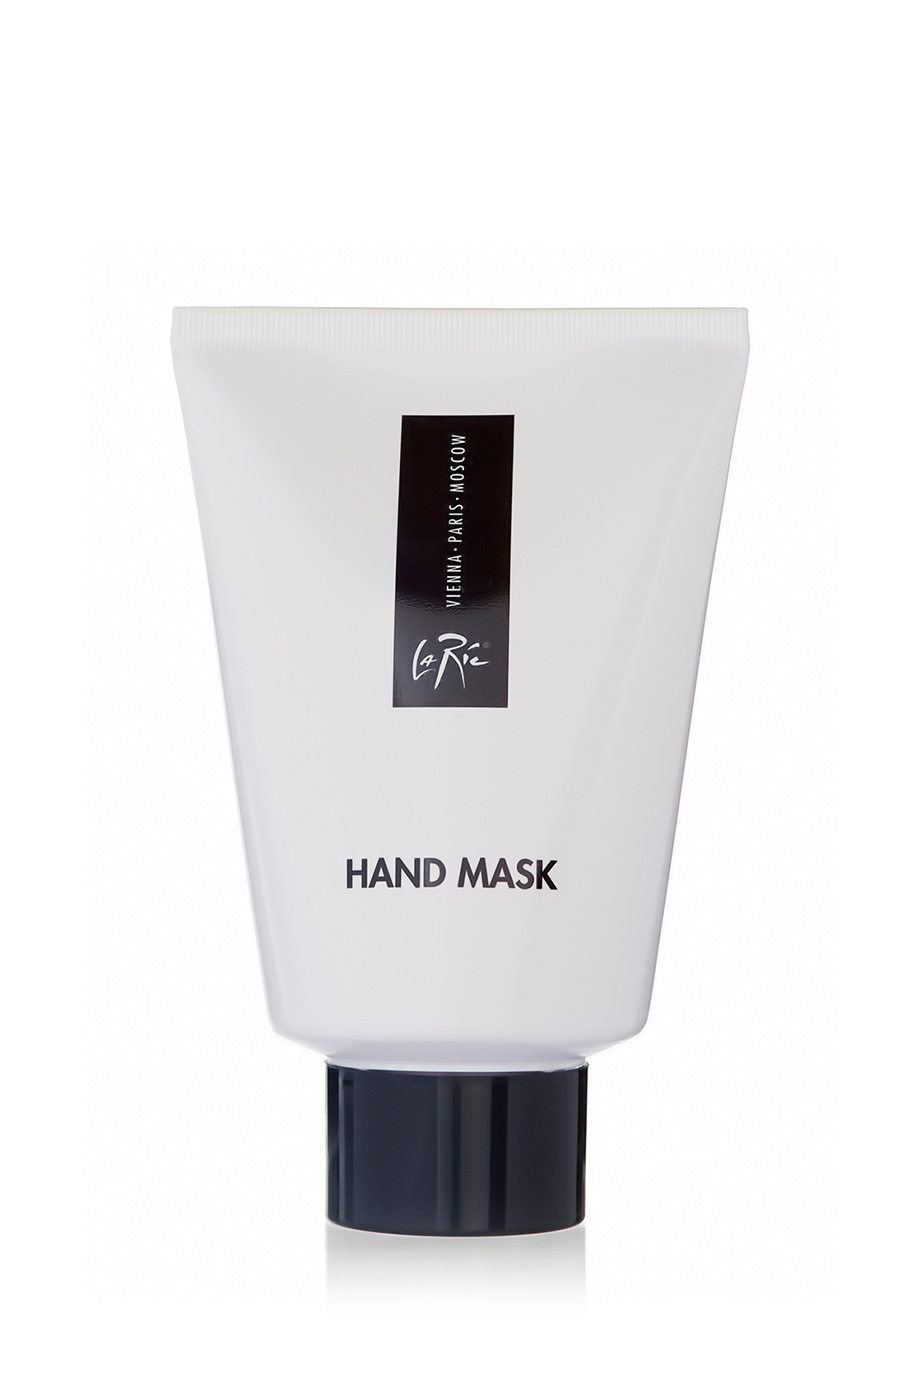 La Ric Hand Mask 100ml - интернет-магазин профессиональной косметики Spadream, изображение 38588